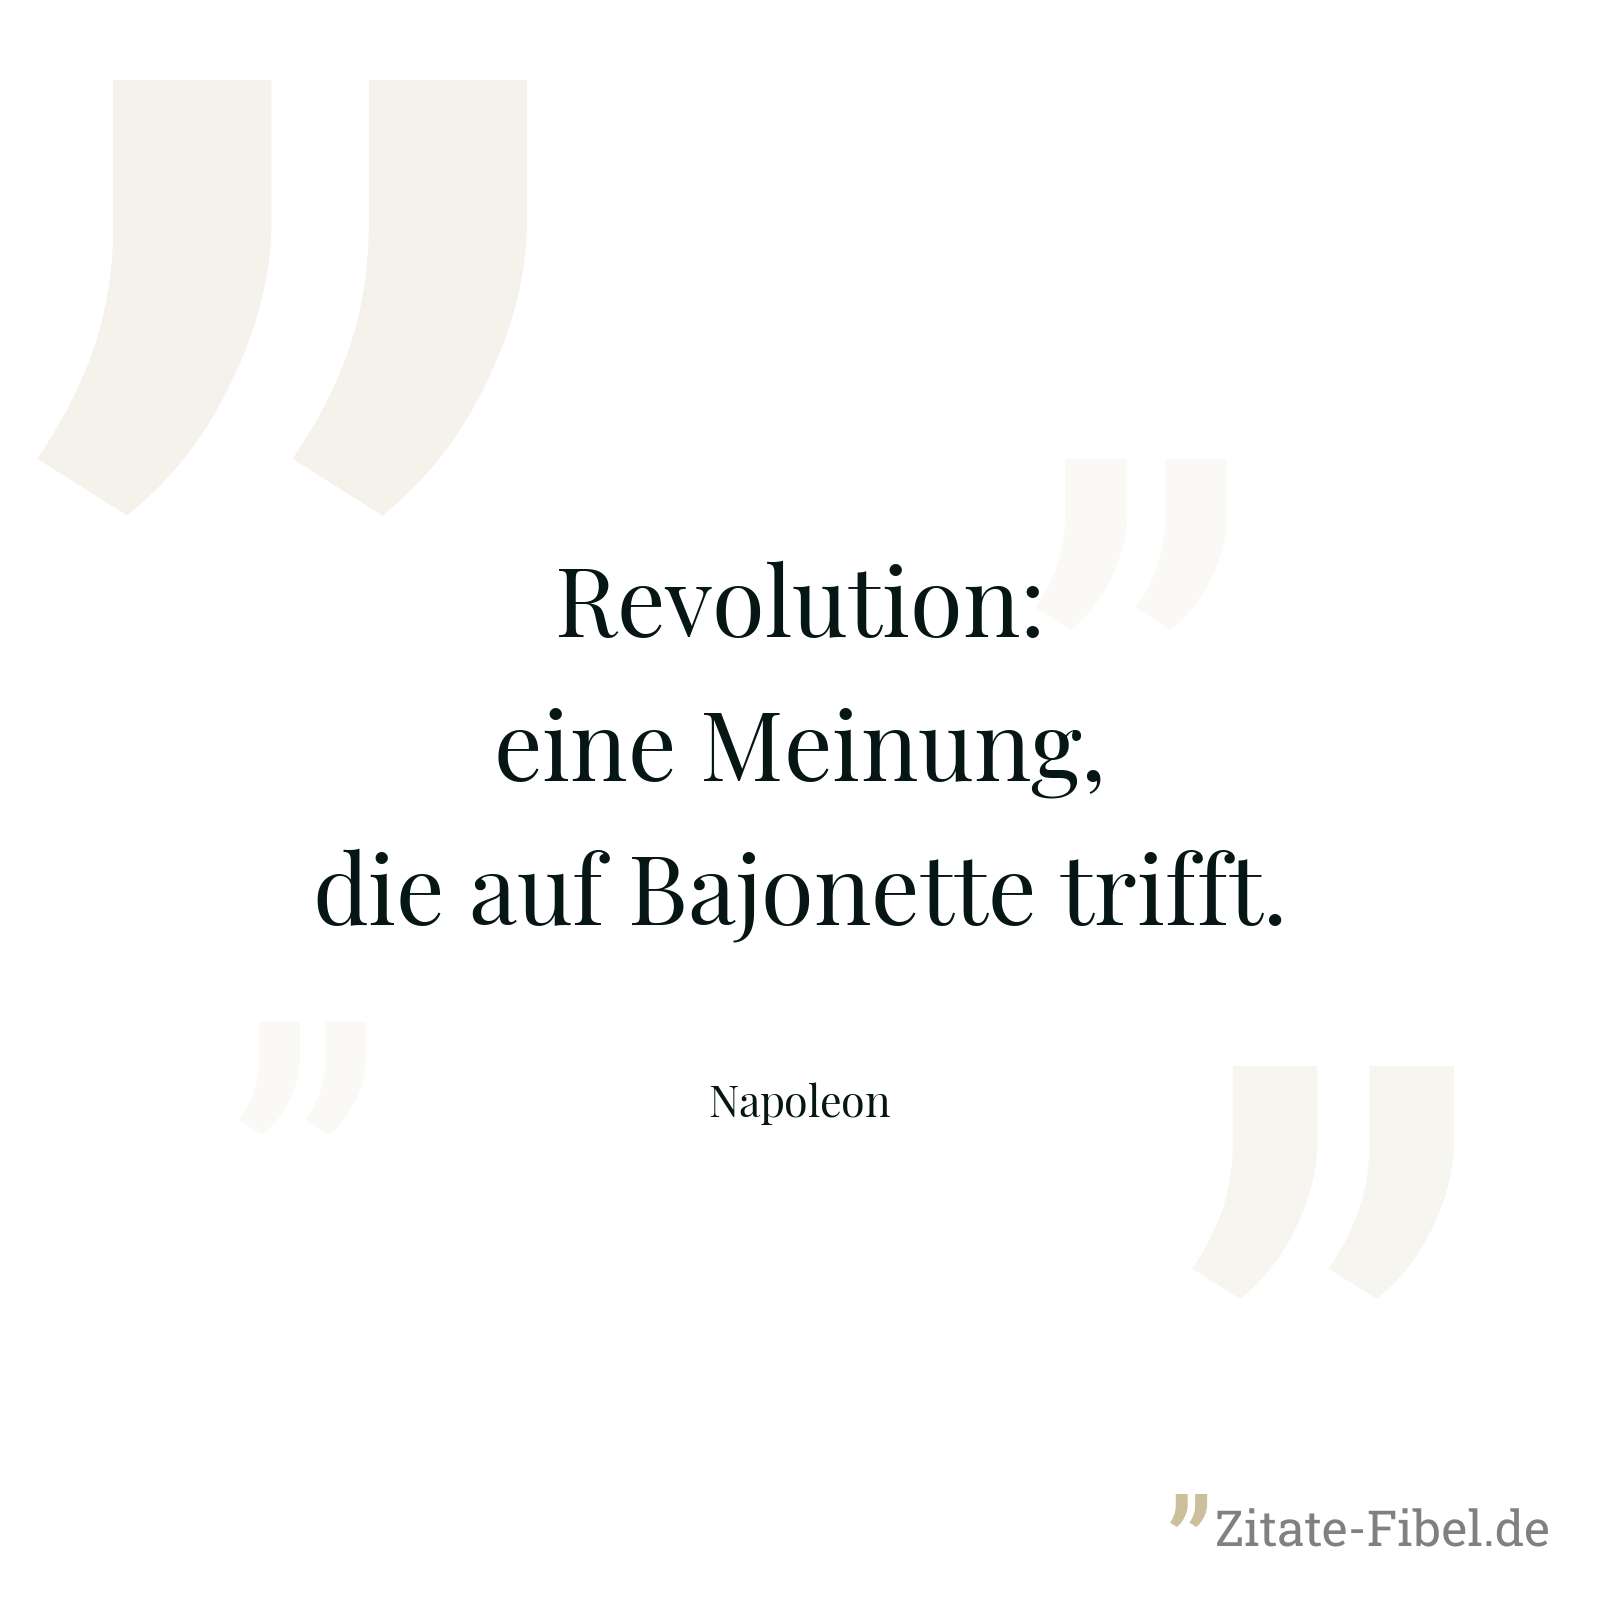 Revolution: eine Meinung, die auf Bajonette trifft. - Napoleon